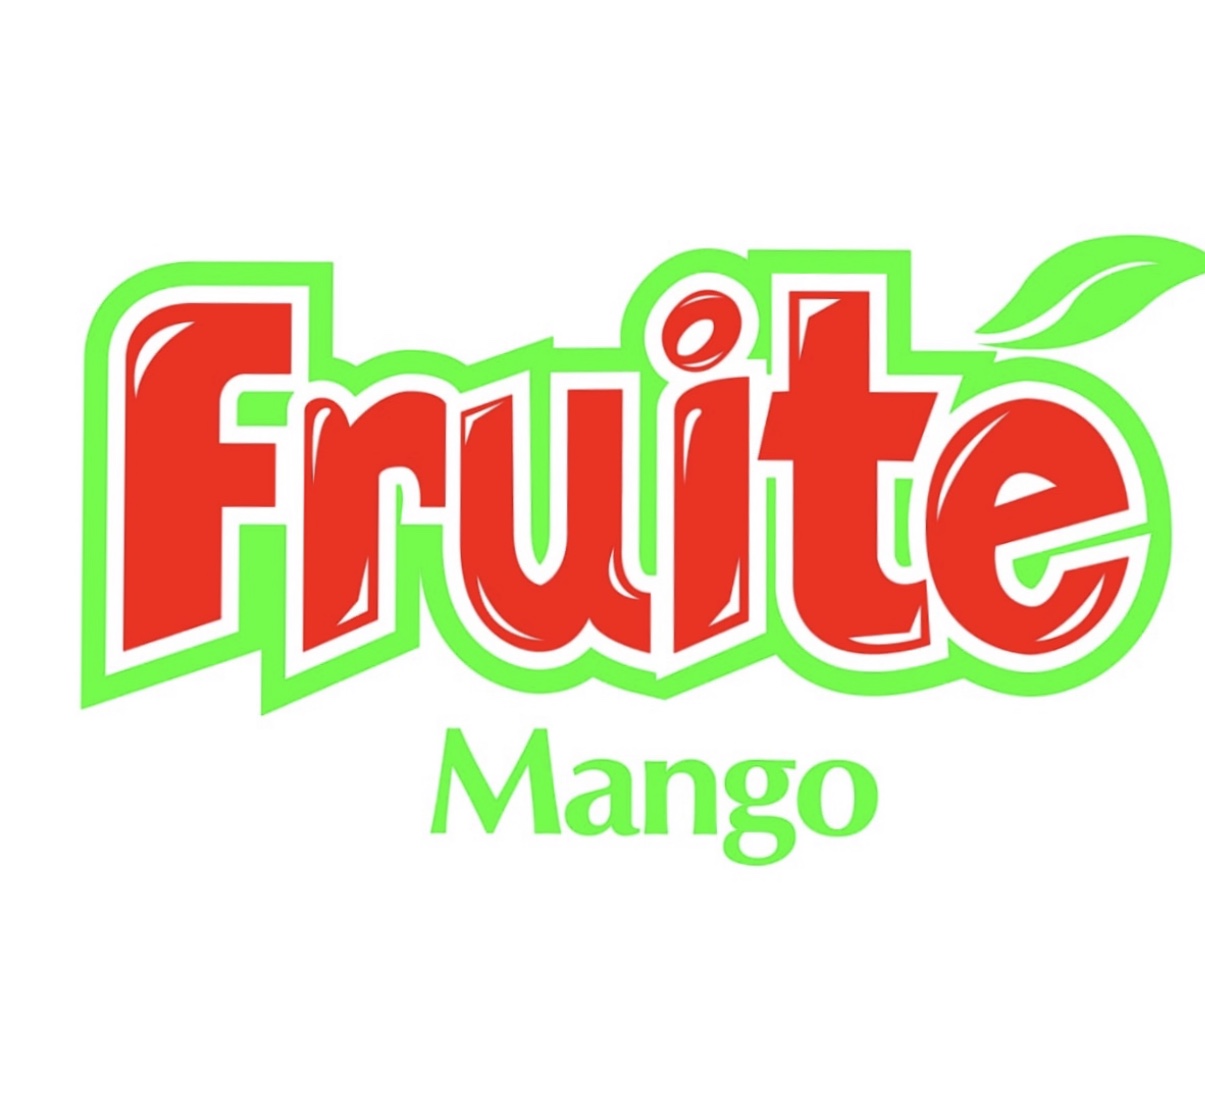 Fruite